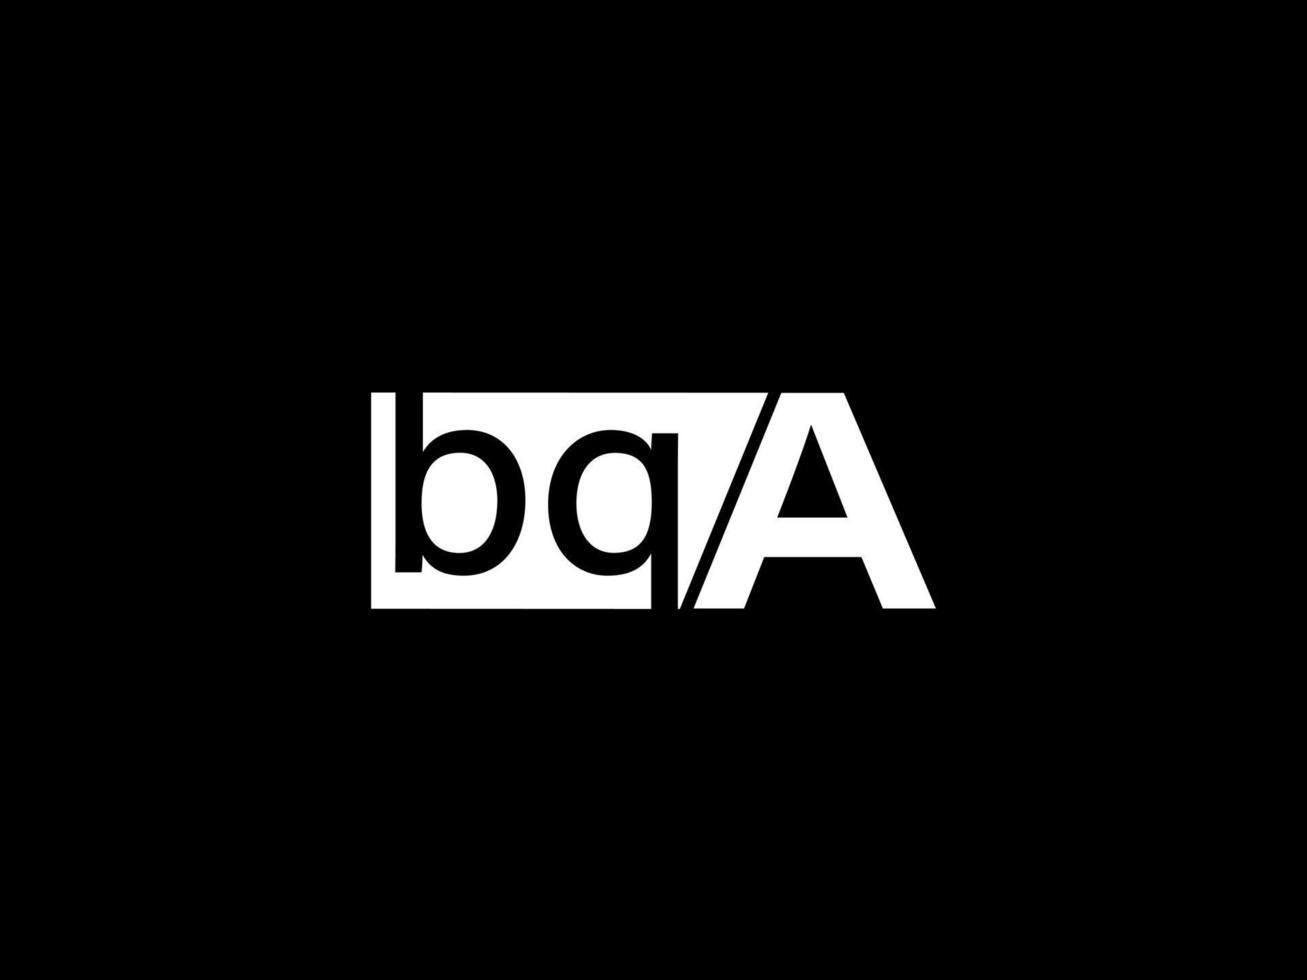 logo bqa et art vectoriel de conception graphique, icônes isolées sur fond noir